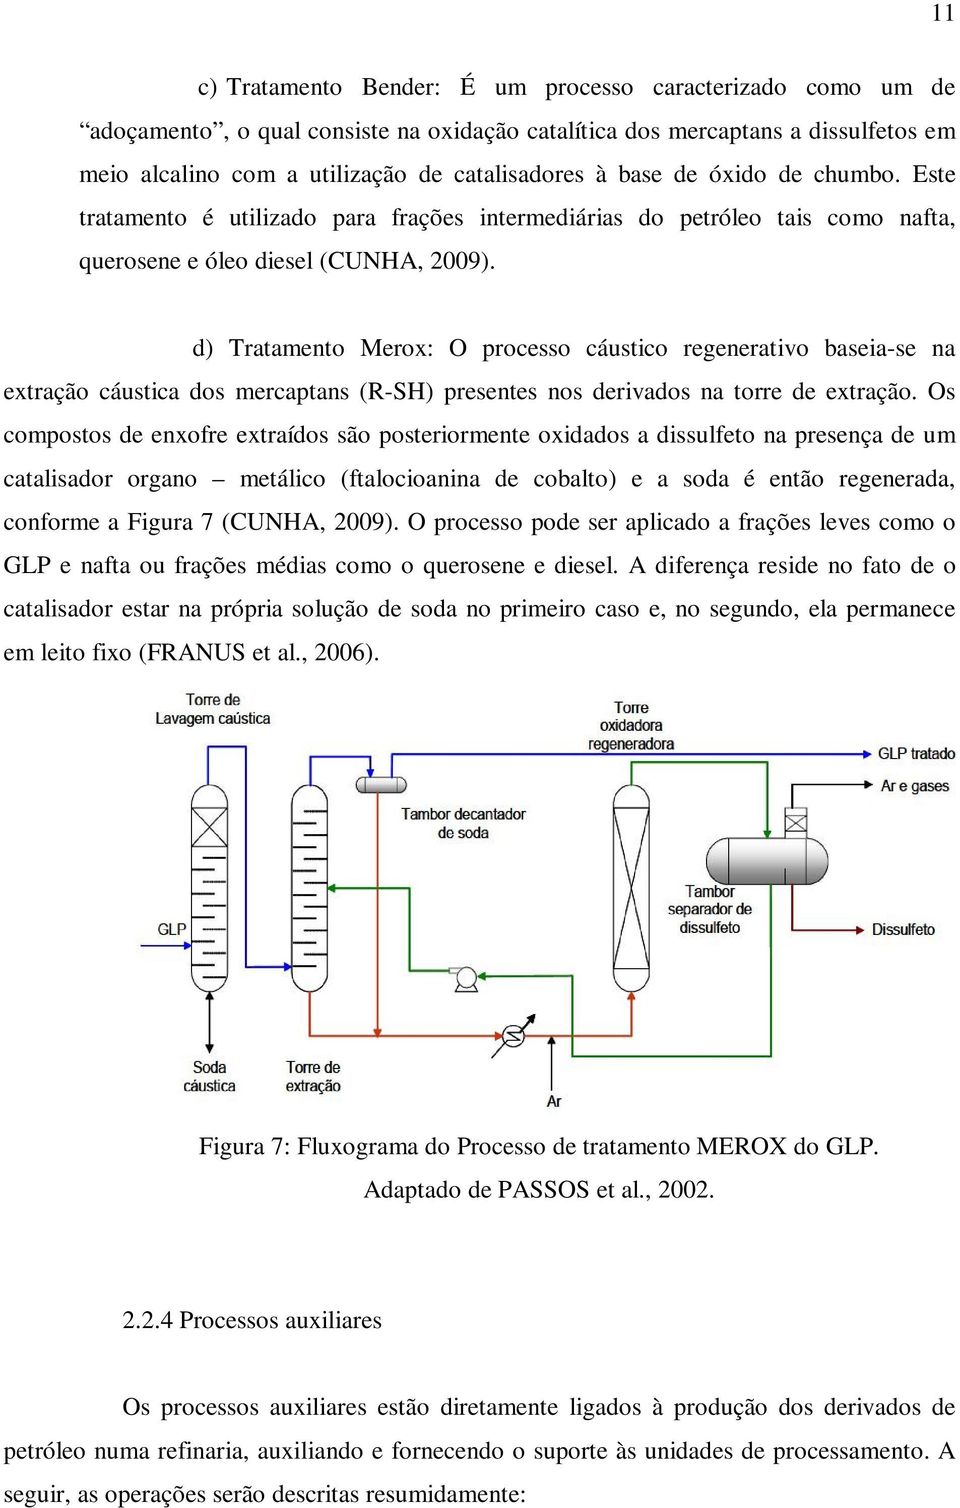 d) Tratamento Merox: O processo cáustico regenerativo baseia-se na extração cáustica dos mercaptans (R-SH) presentes nos derivados na torre de extração.